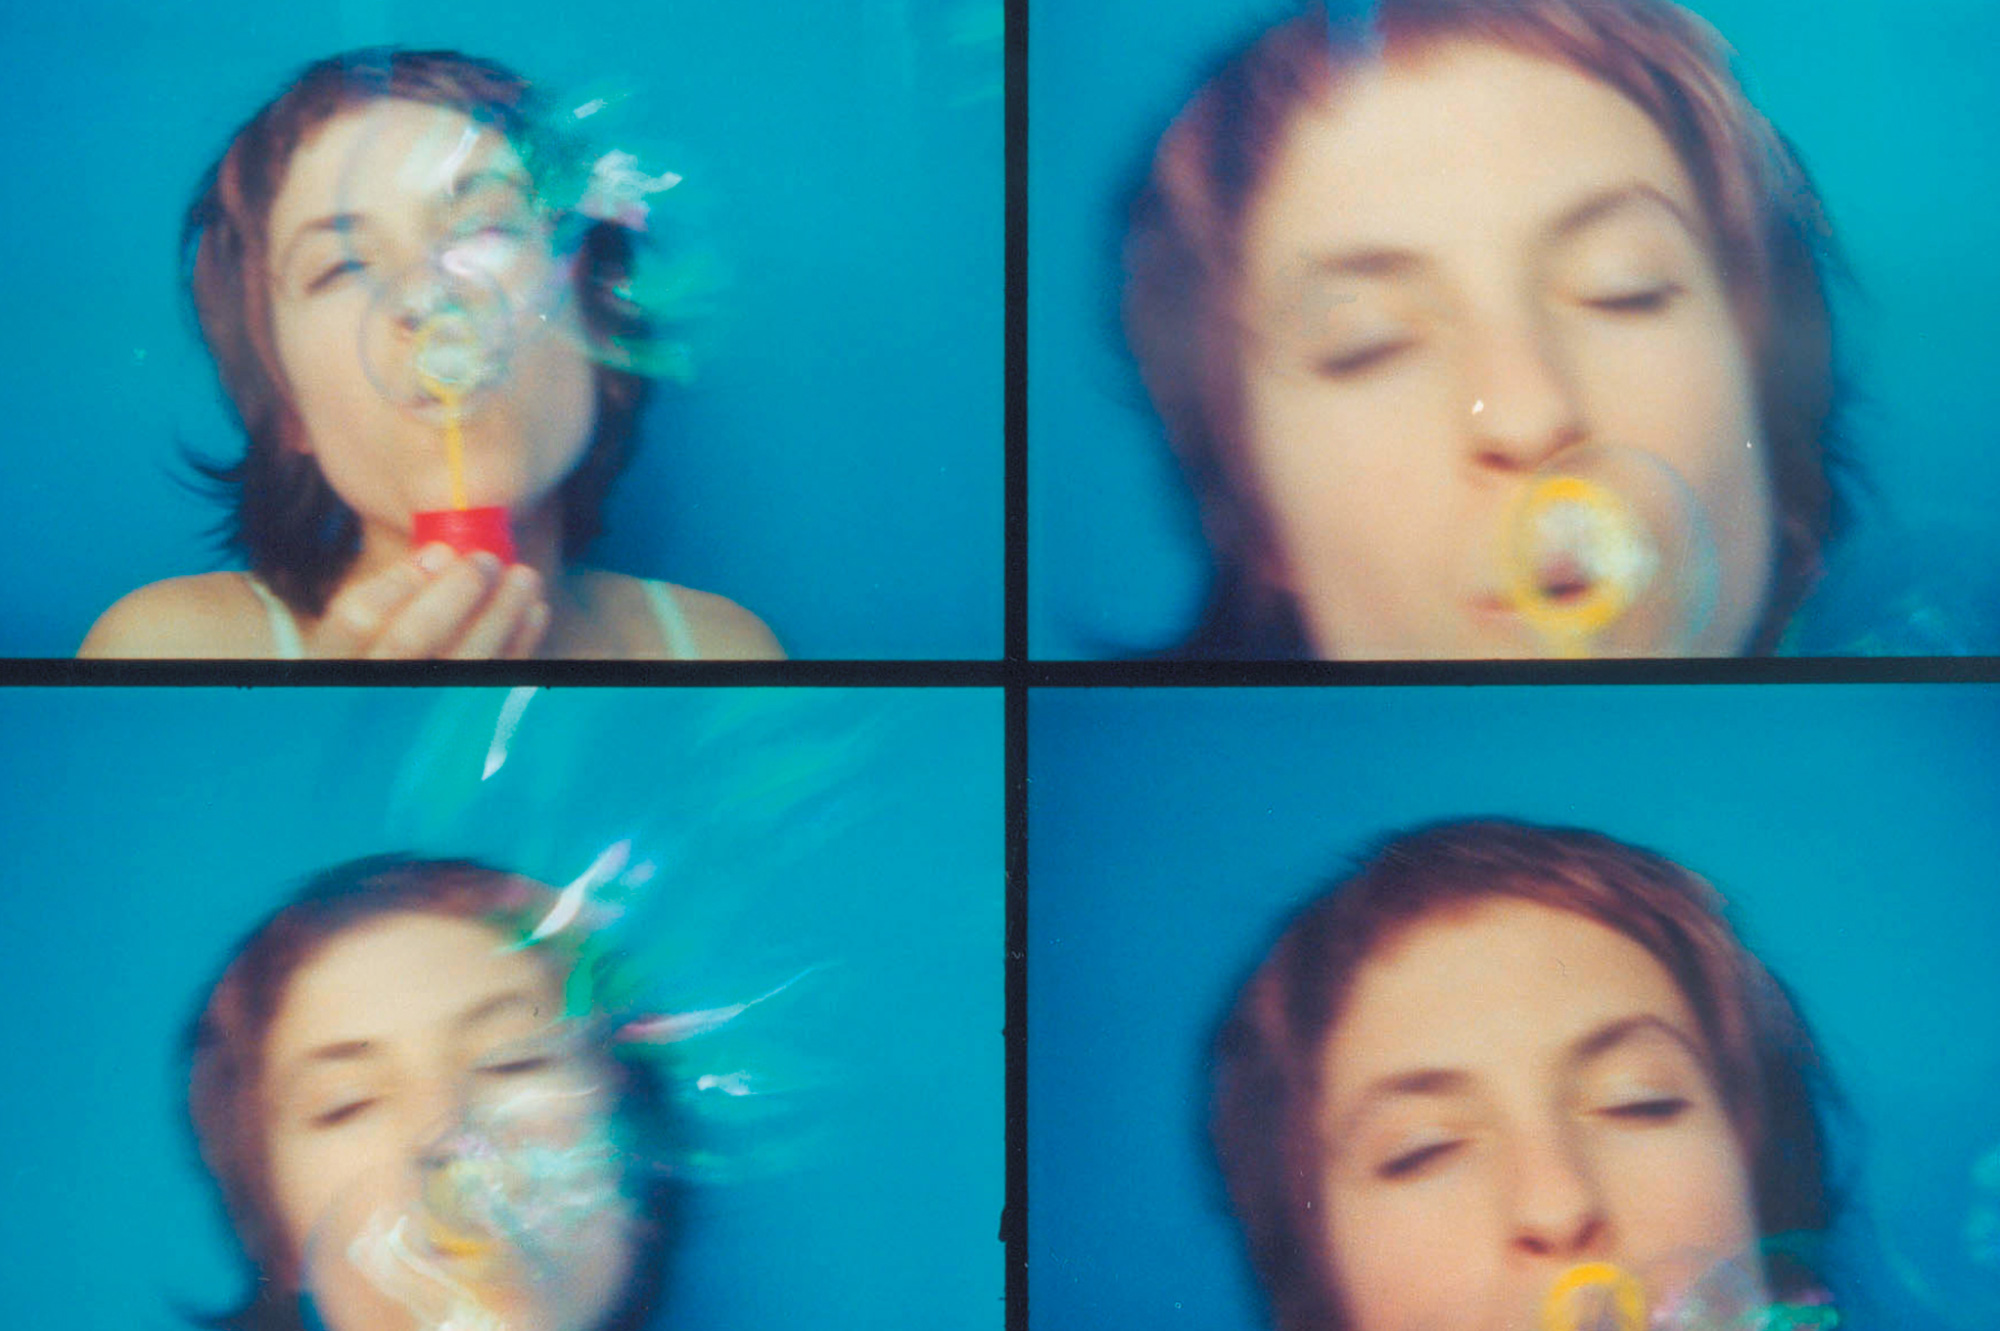 Four Lomographic images depicting a woman blowing soap bubbles.